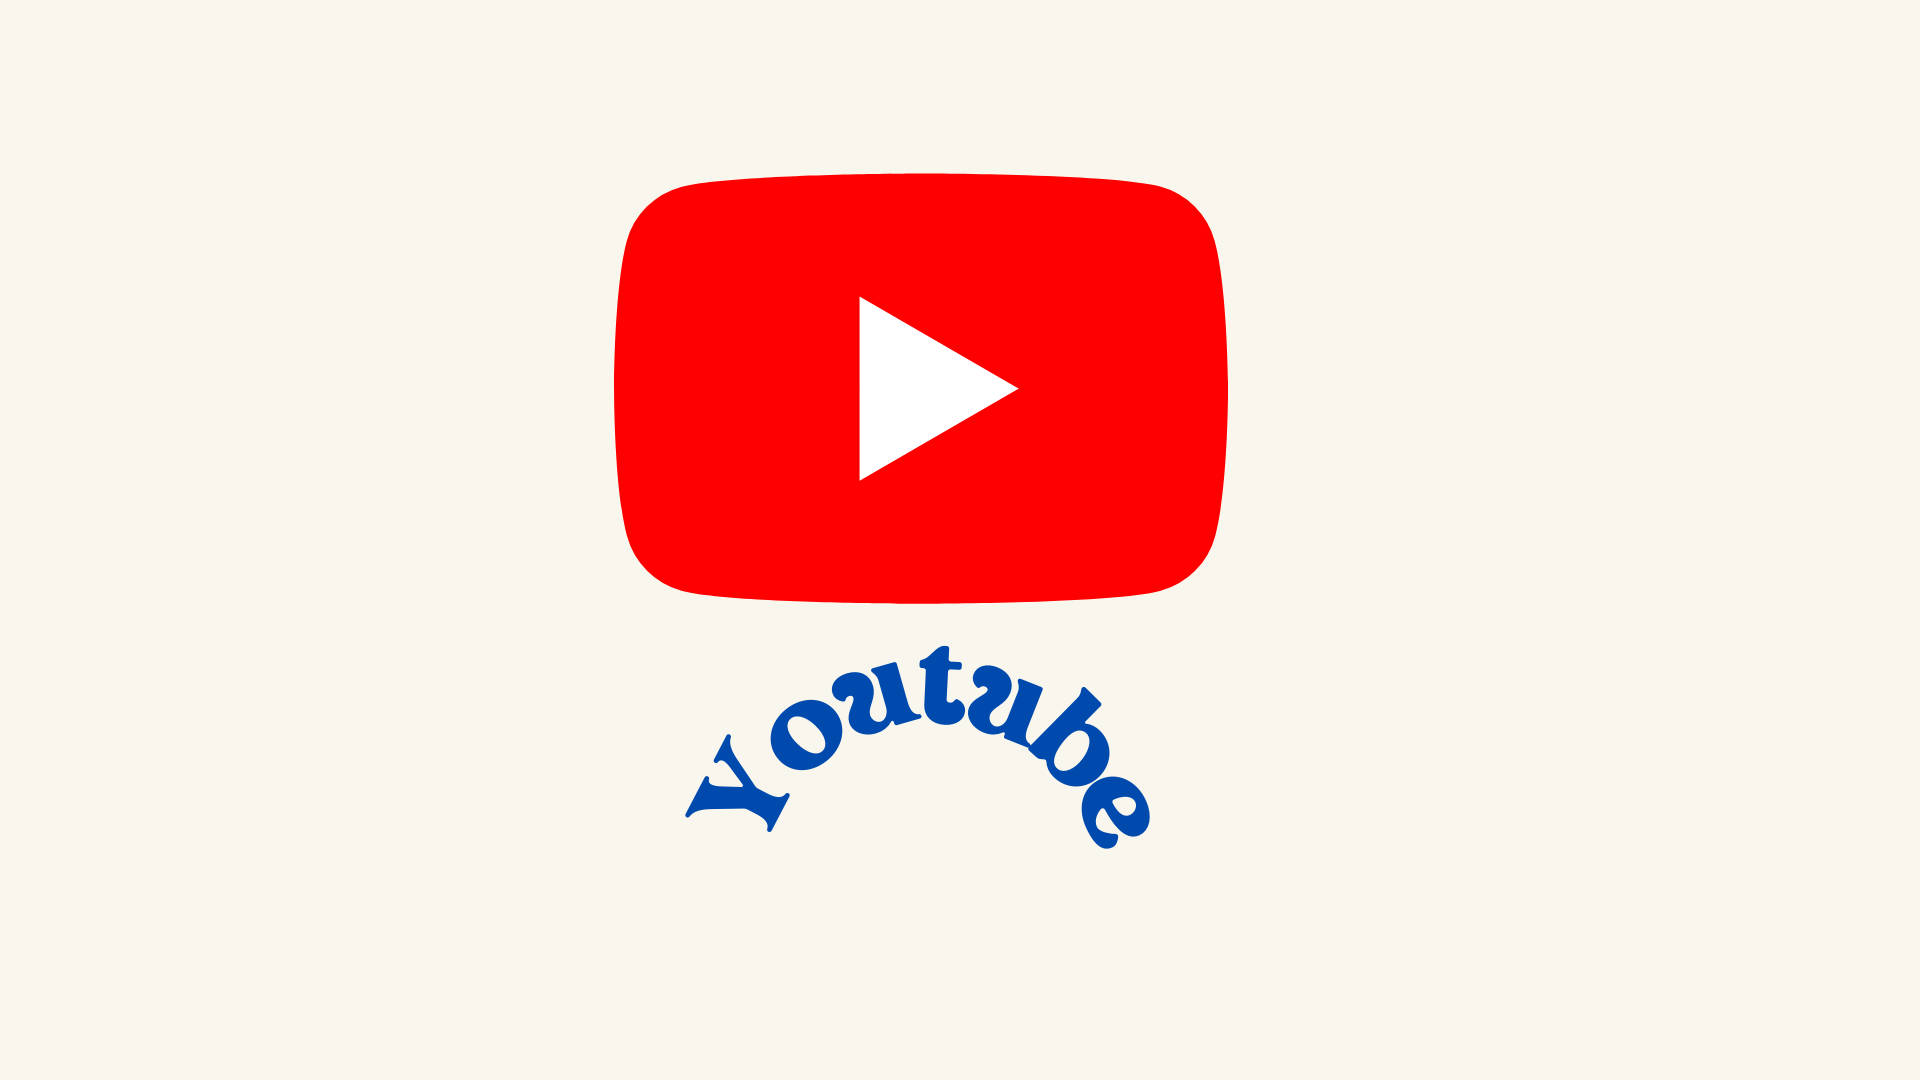 Logo af Youtube i retro-stil. Wallpaper